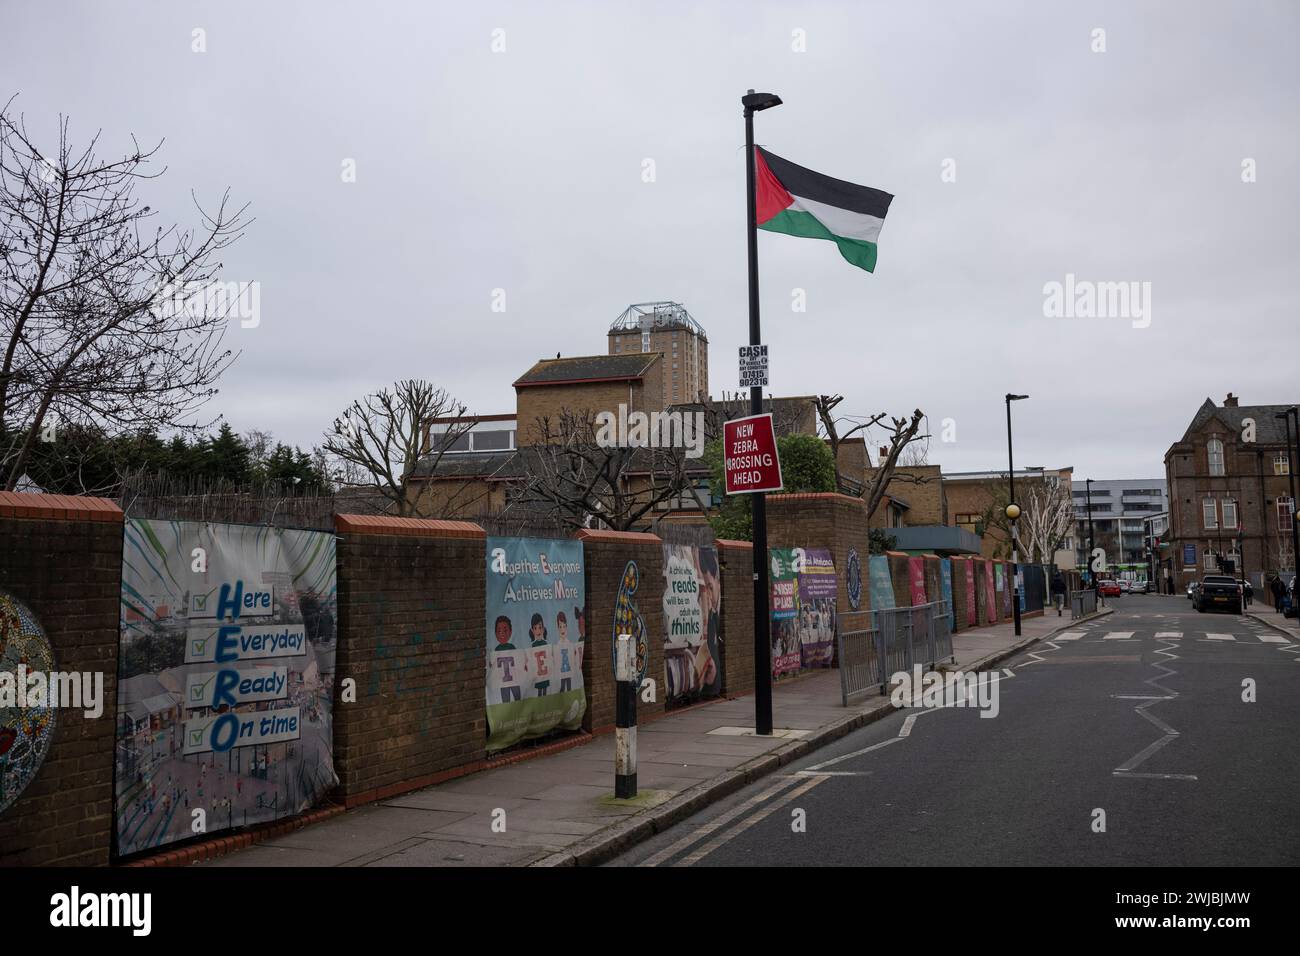 Bigland Green Primary School, où les drapeaux pro-palestiniens flottent directement devant l'entrée de l'école, Shadwell, East London, Royaume-Uni Banque D'Images